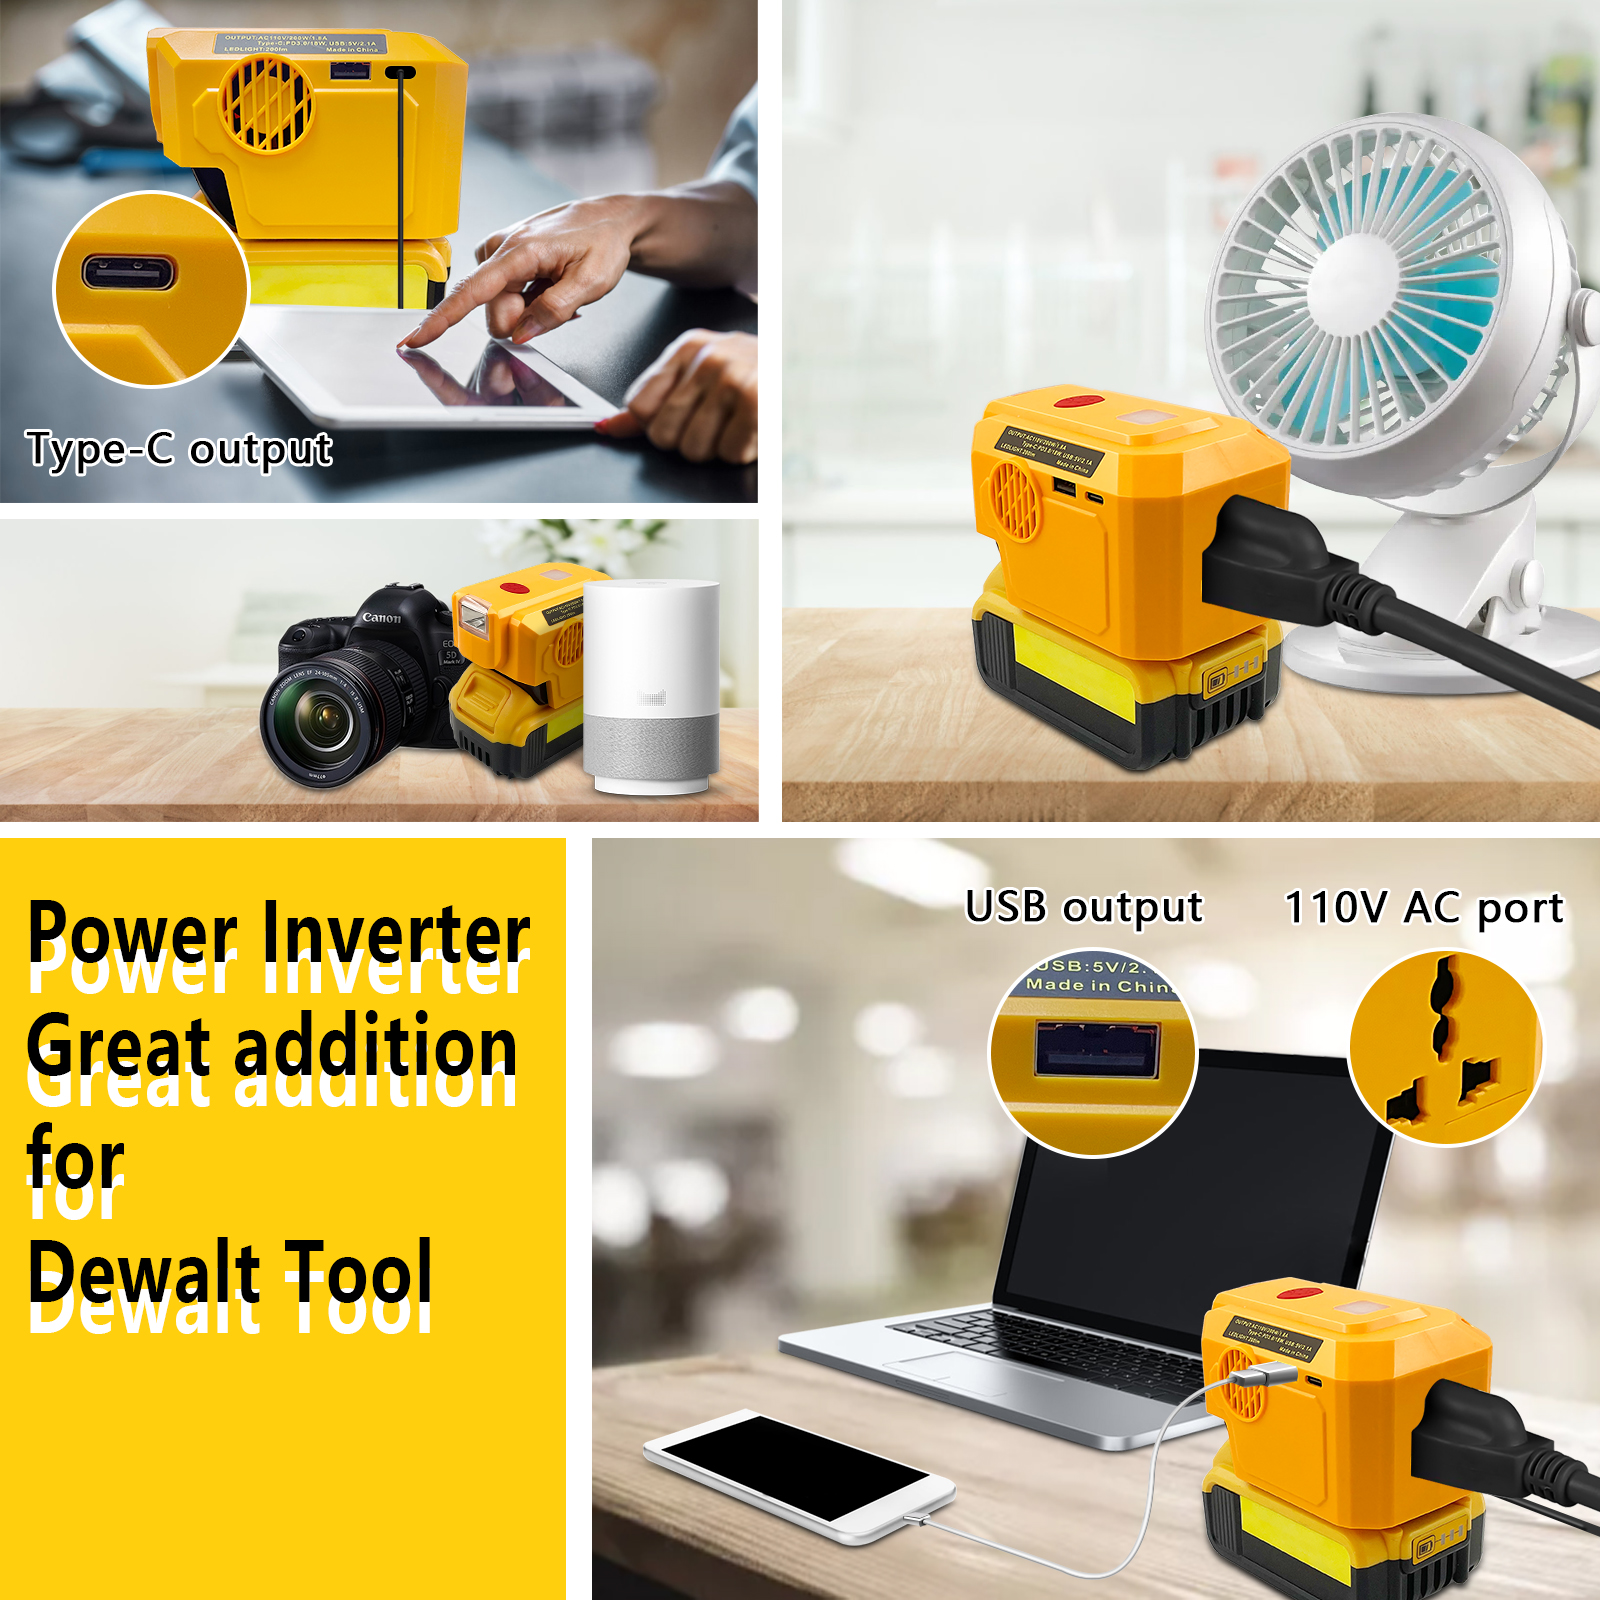 Generatore Power Inverter da 200W compatibile con batteria al litio Dewalt 20V